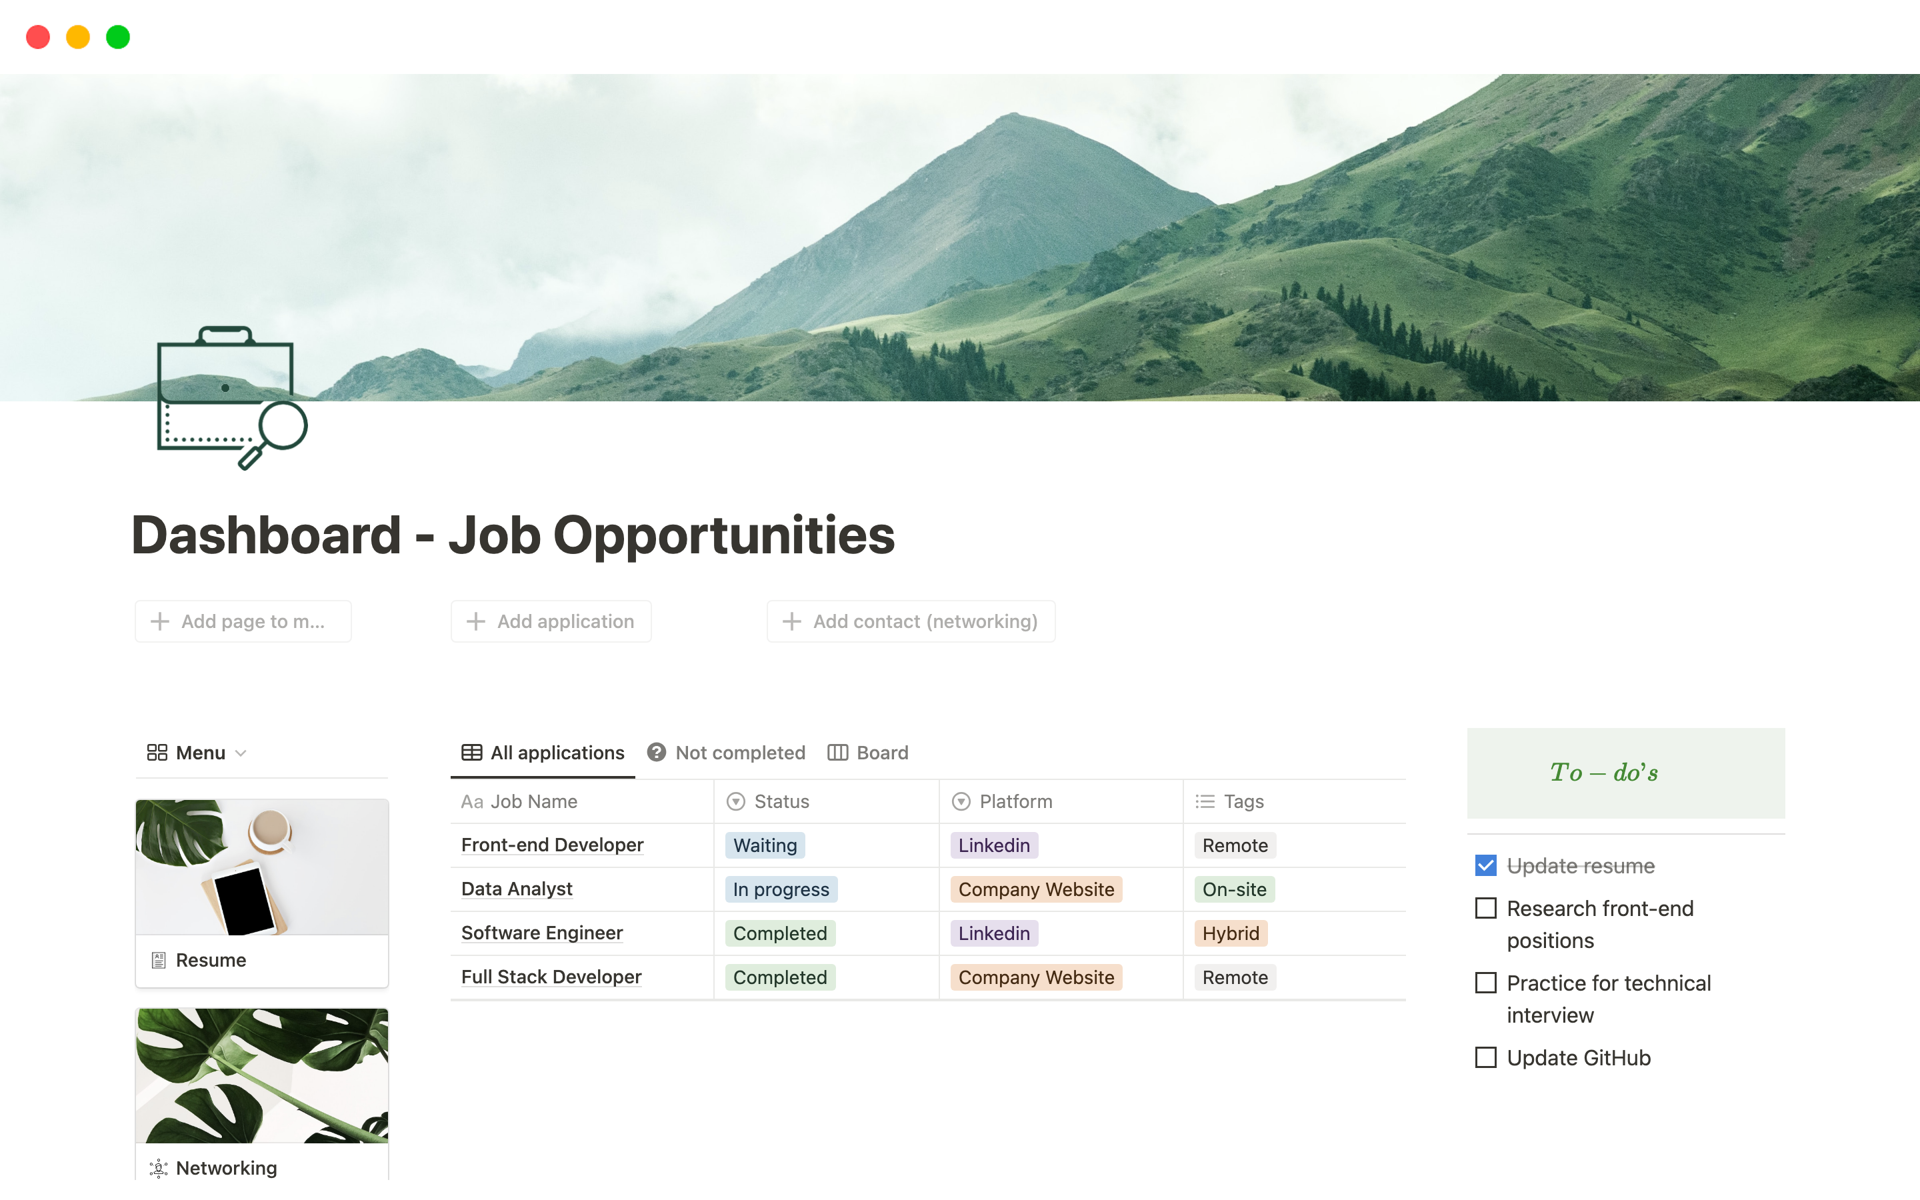 Uma prévia do modelo para Dashboard - Job Opportunities